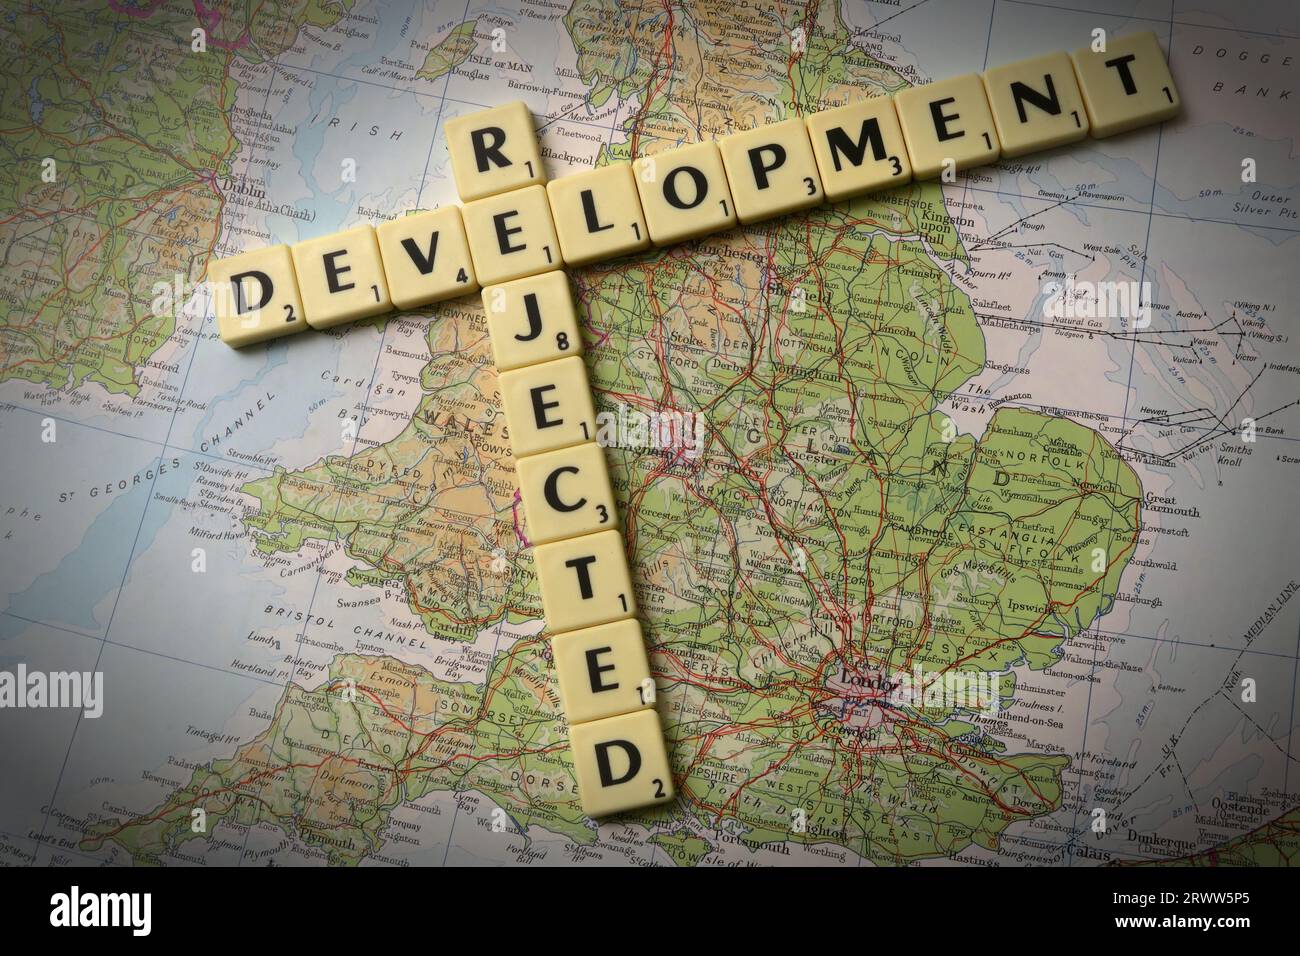 Die Entwicklung wurde abgelehnt und in Scrabble-Buchstaben und -Wörtern auf einer Karte von England beschrieben – lokale Entwicklung und Gebäudekontrolle Stockfoto